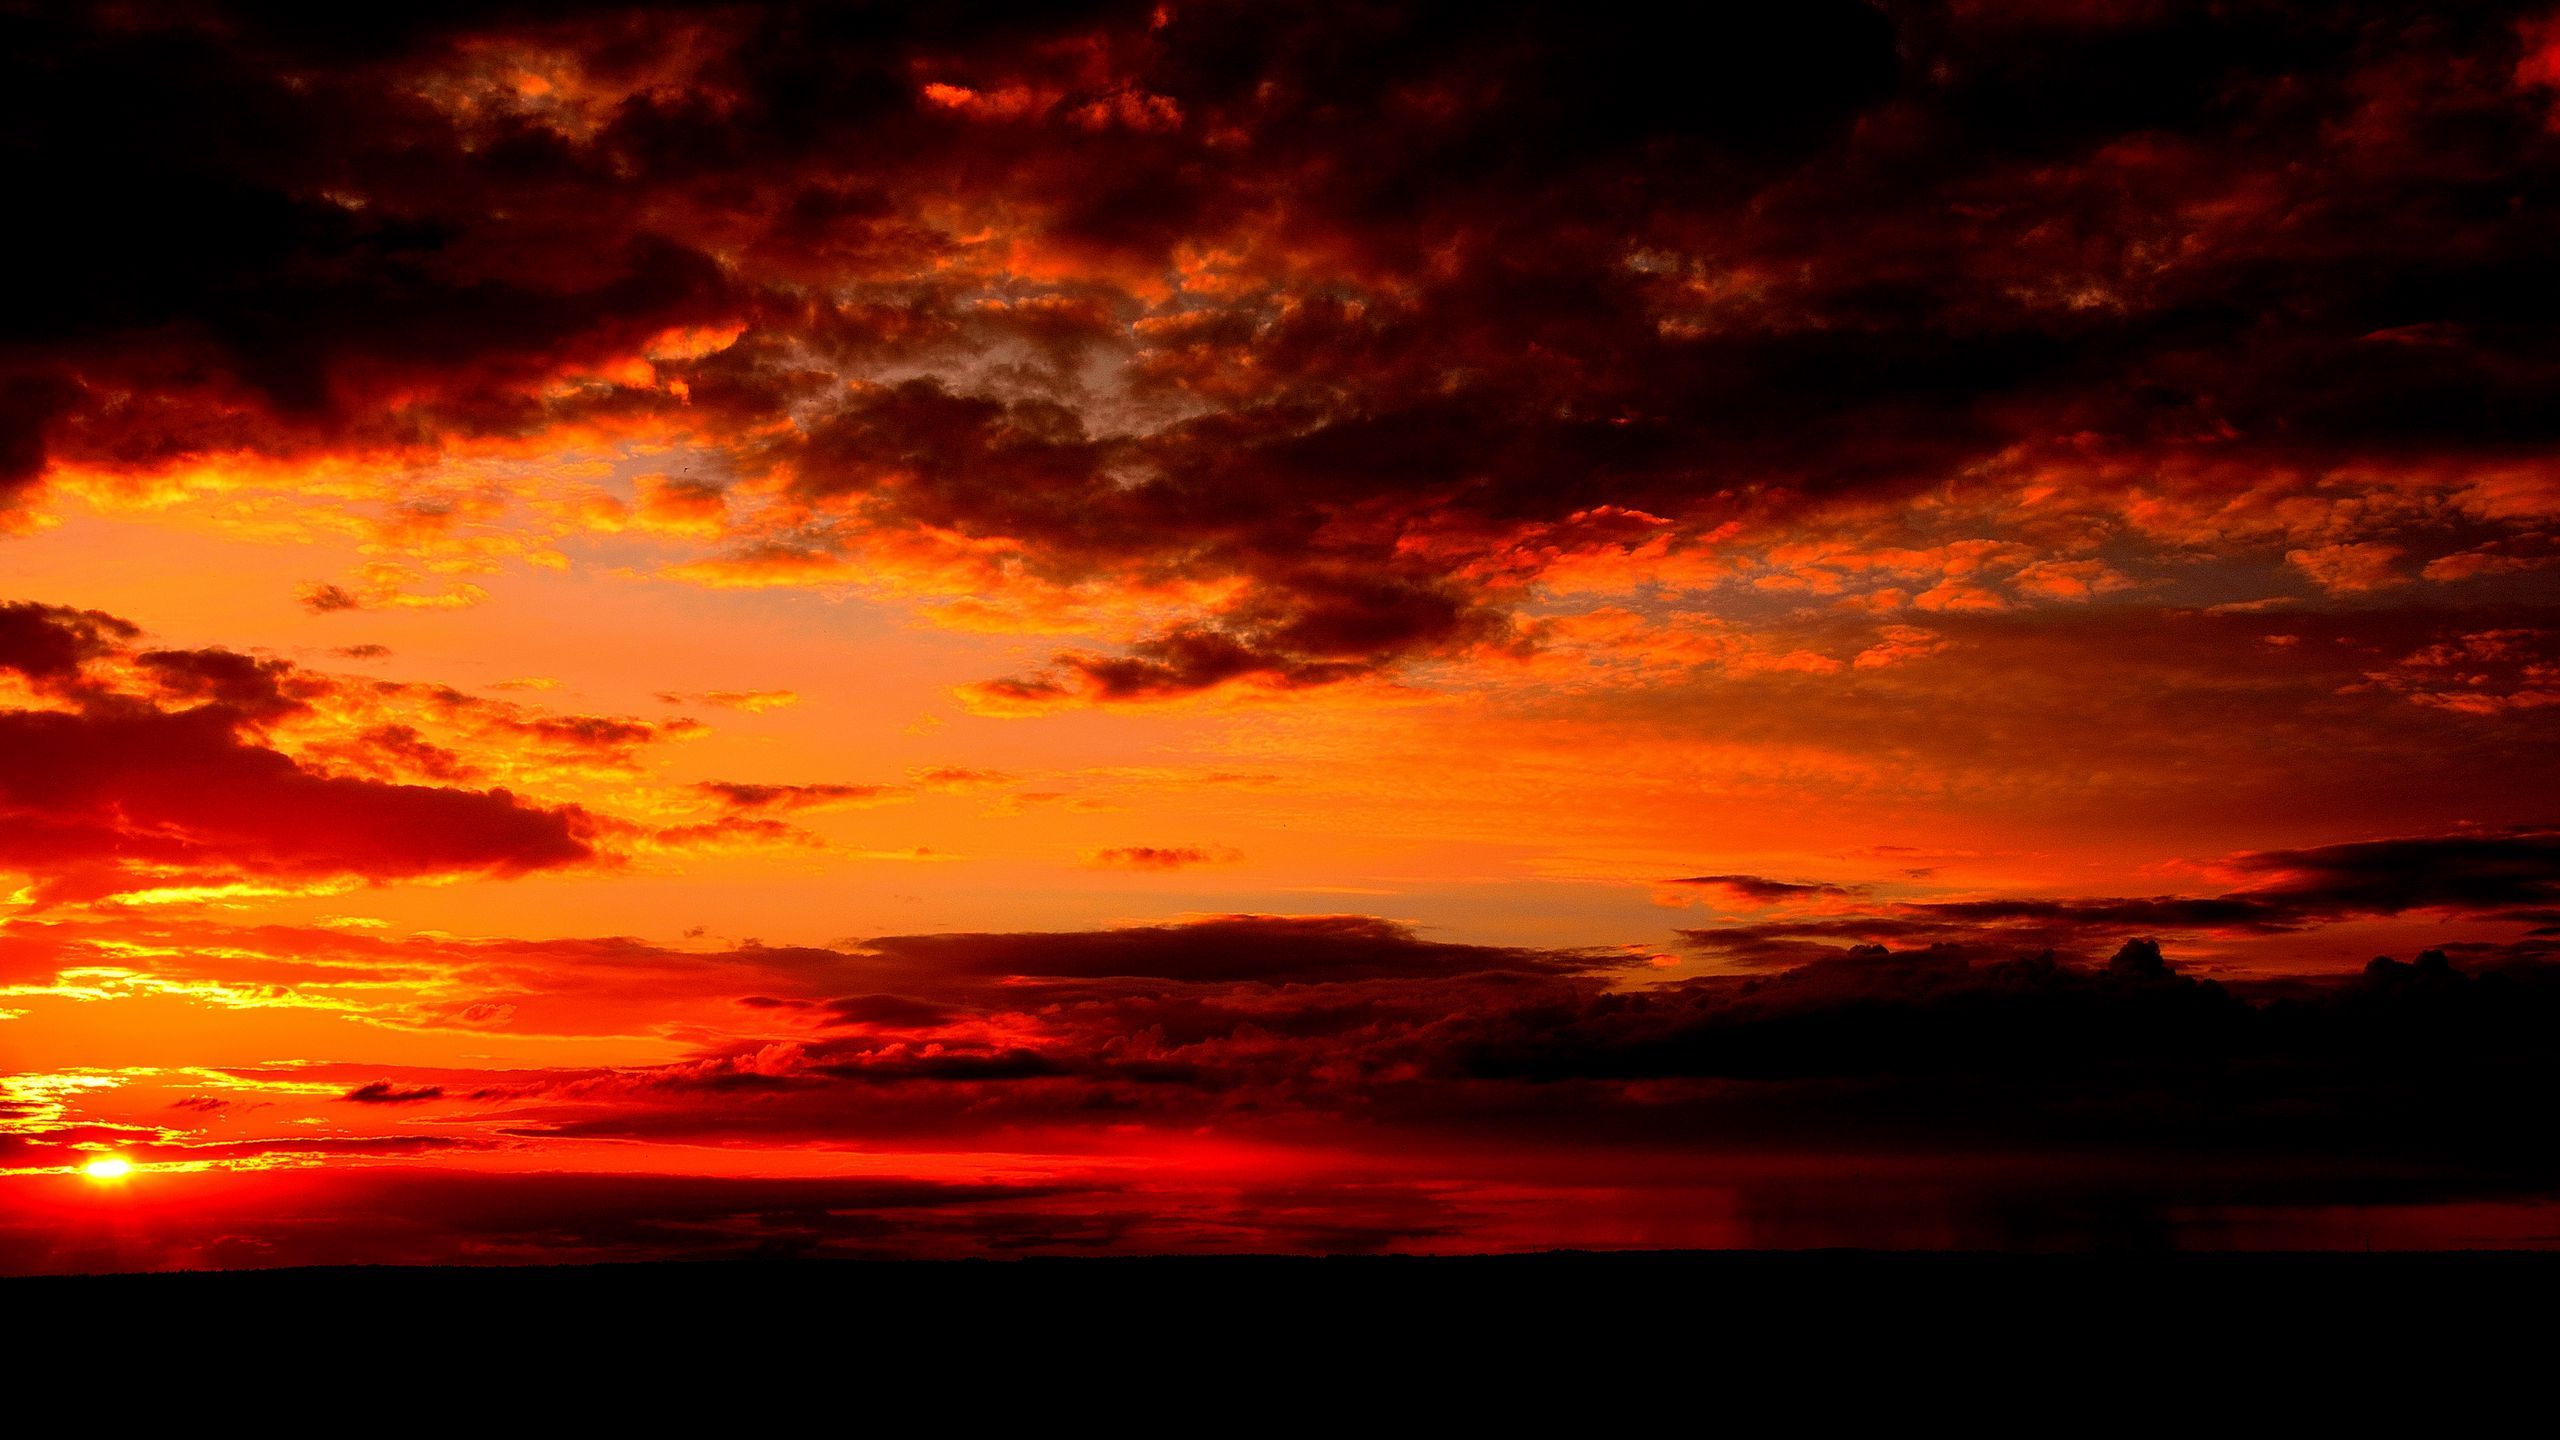 Download wallpaper 2560x1440 clouds, sunset, horizon, dark widescreen 16:9 HD background